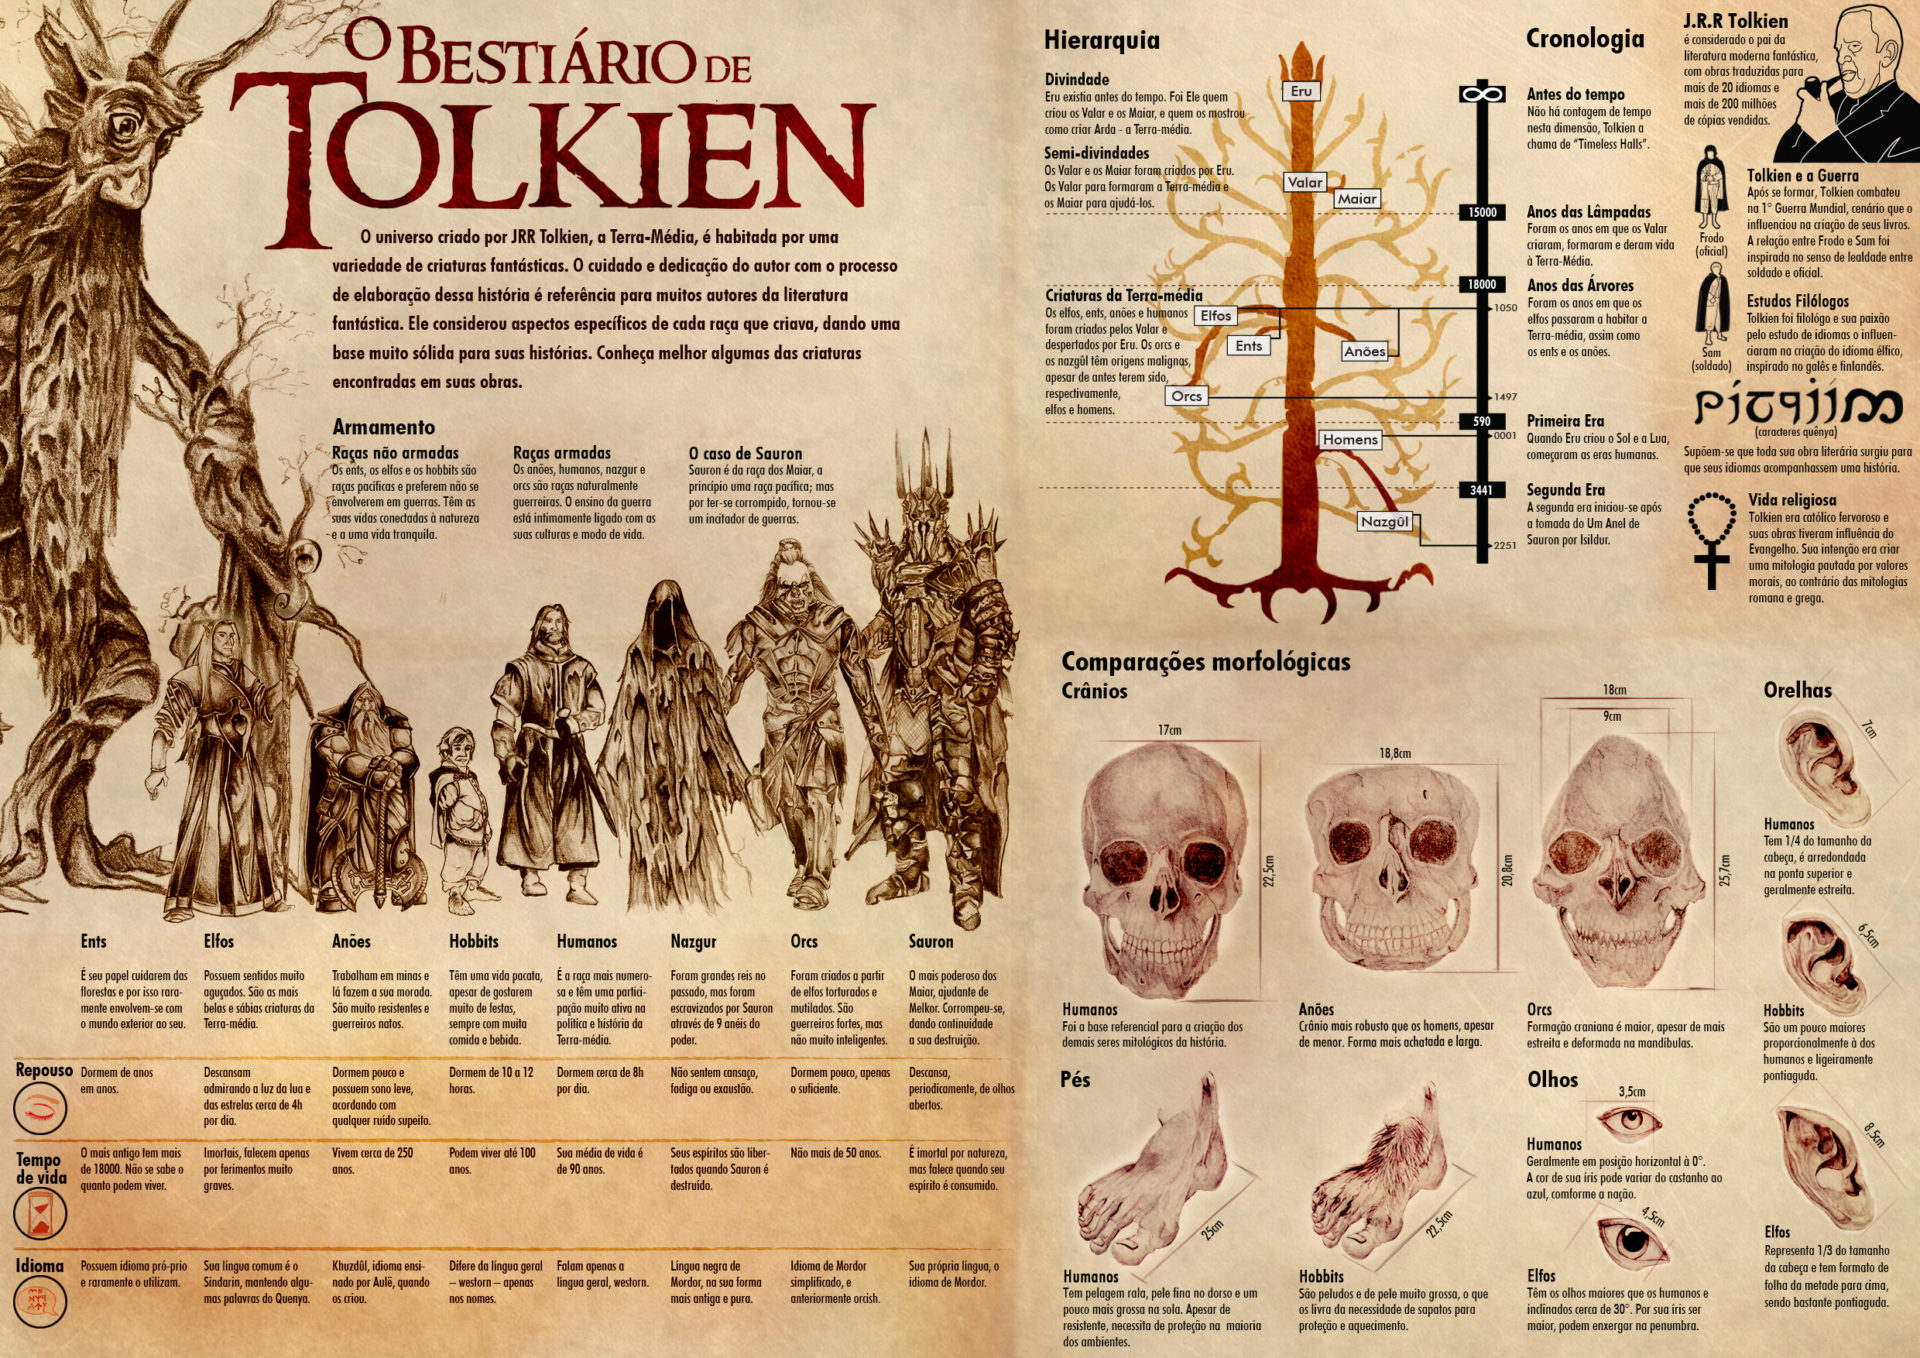 Lord Sauron - Comparações entre os dragões da Terra-Média